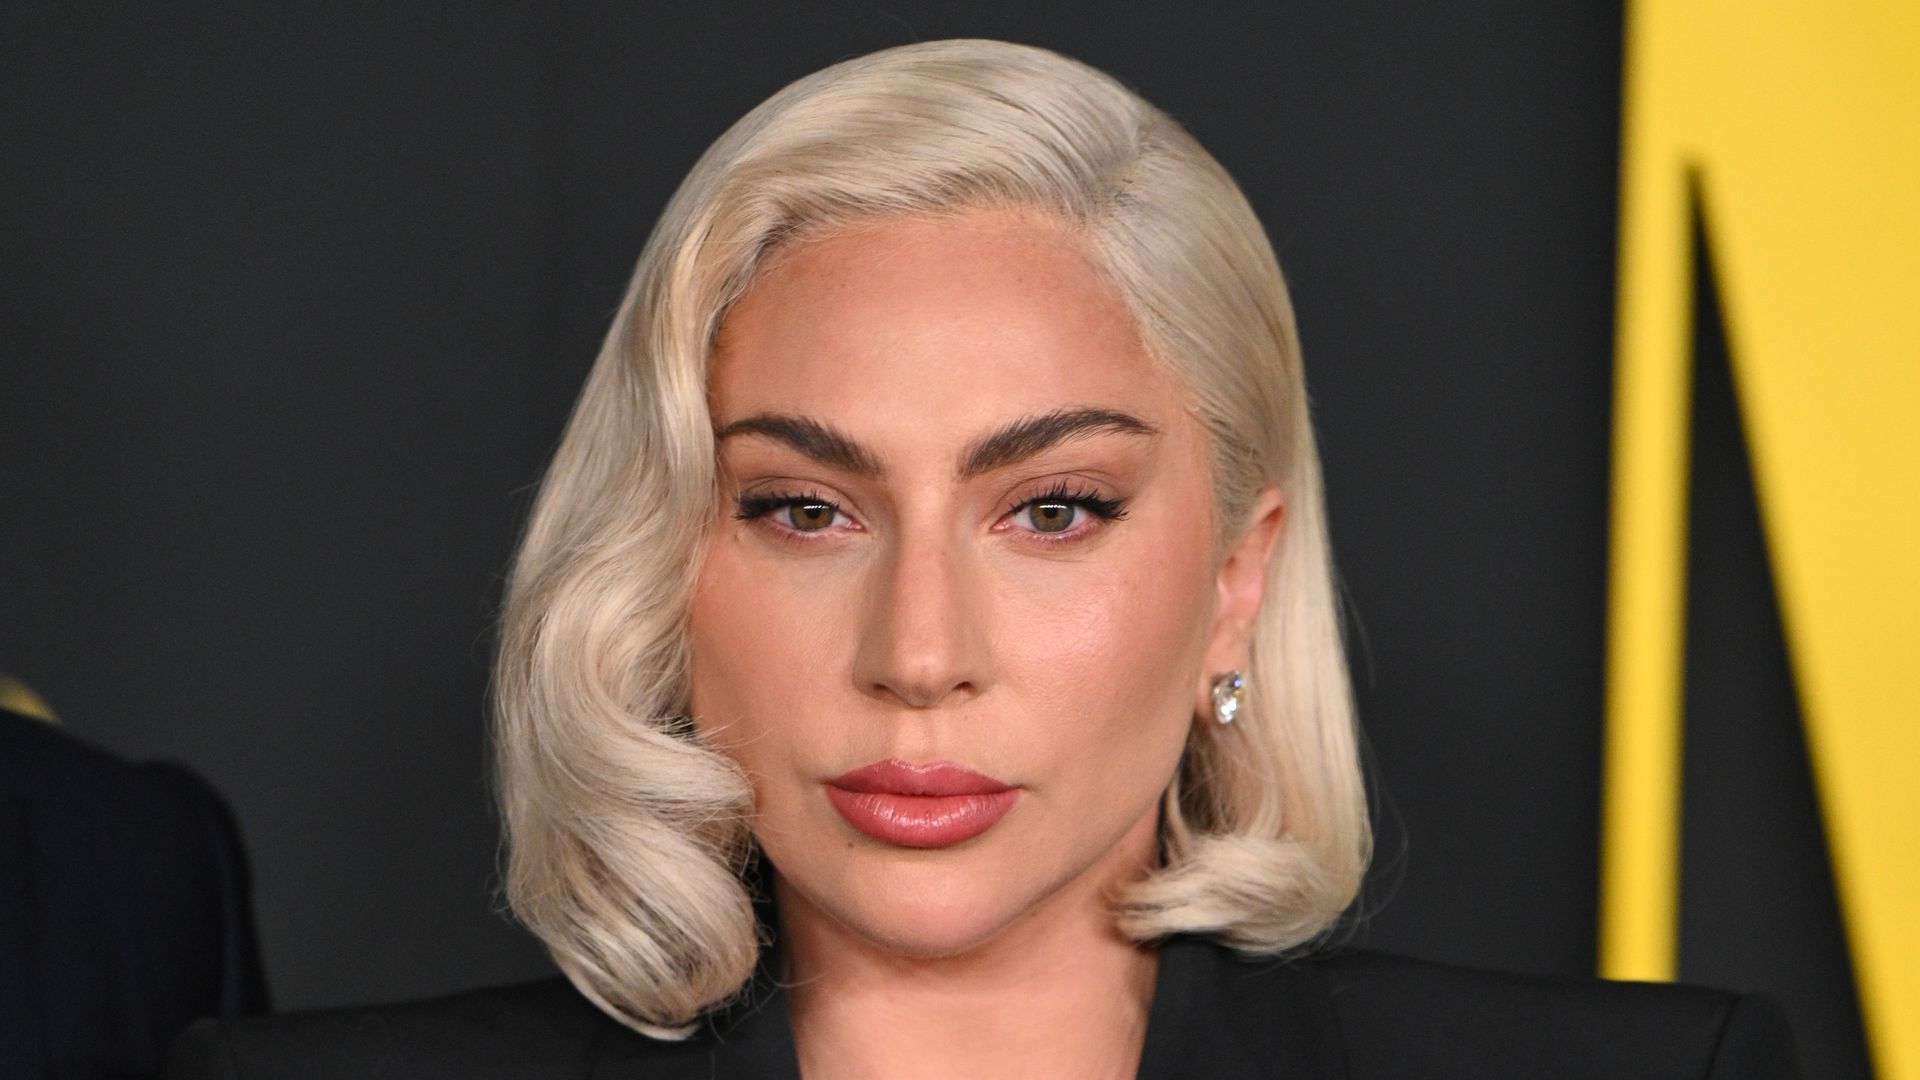 Trei piese ale lui Lady Gaga, versiuni de lucru și nelansate, au fost piratate și puse pe platforme de streaming